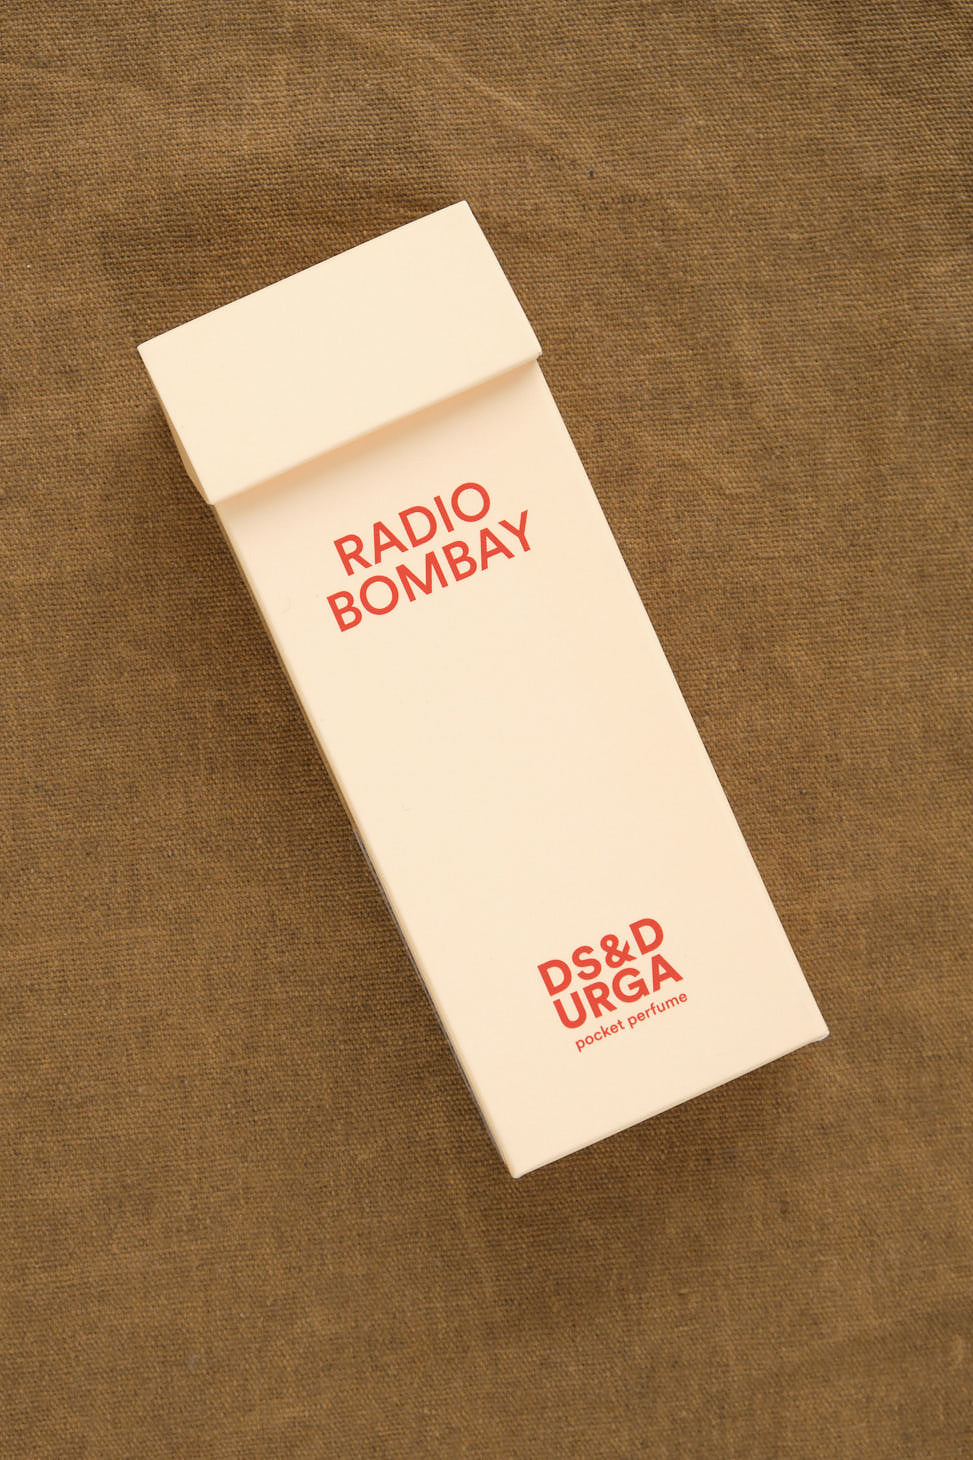 Radio Bombay Pocket Perfume